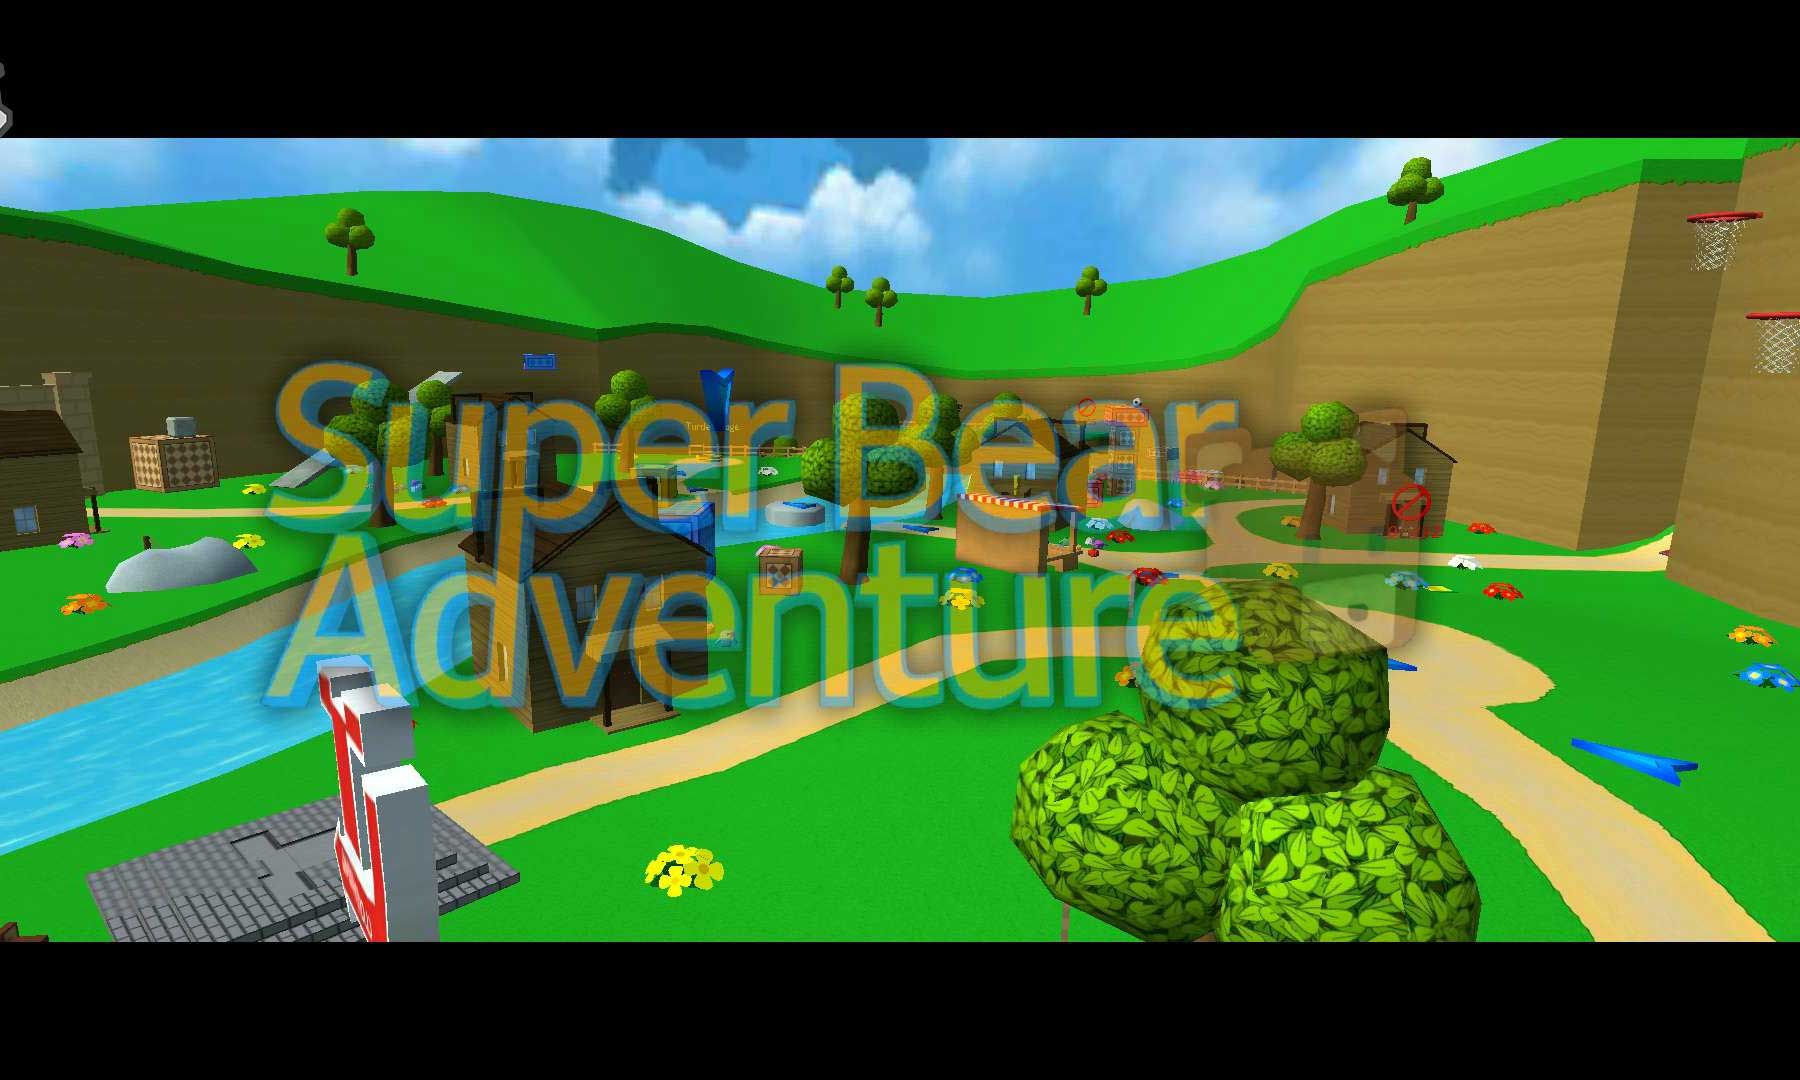 3D Platformer] Super Bear Adventure (com.Earthkwak.Platformer) 1.2.1 APK